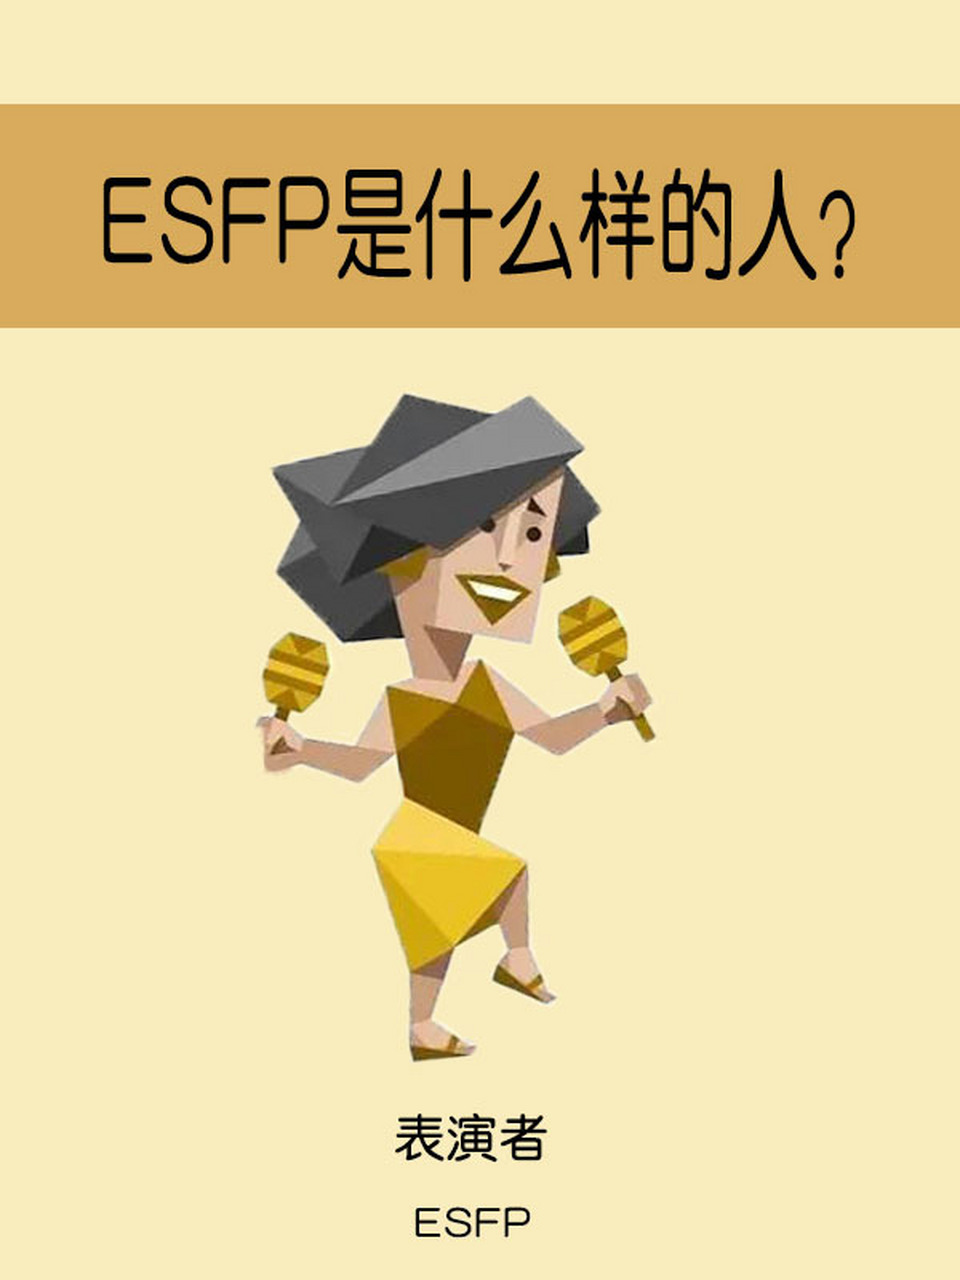 表演者型(ESFP)图片